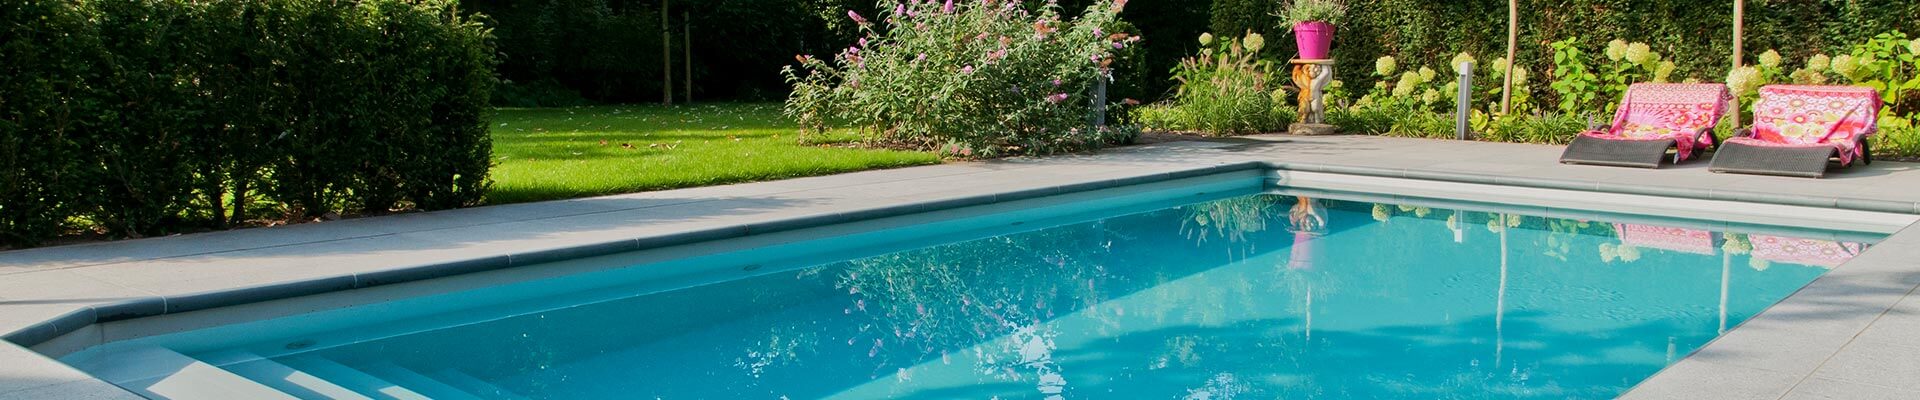 ELBIO: Swimmingpool im Garten mit Liegestühlen